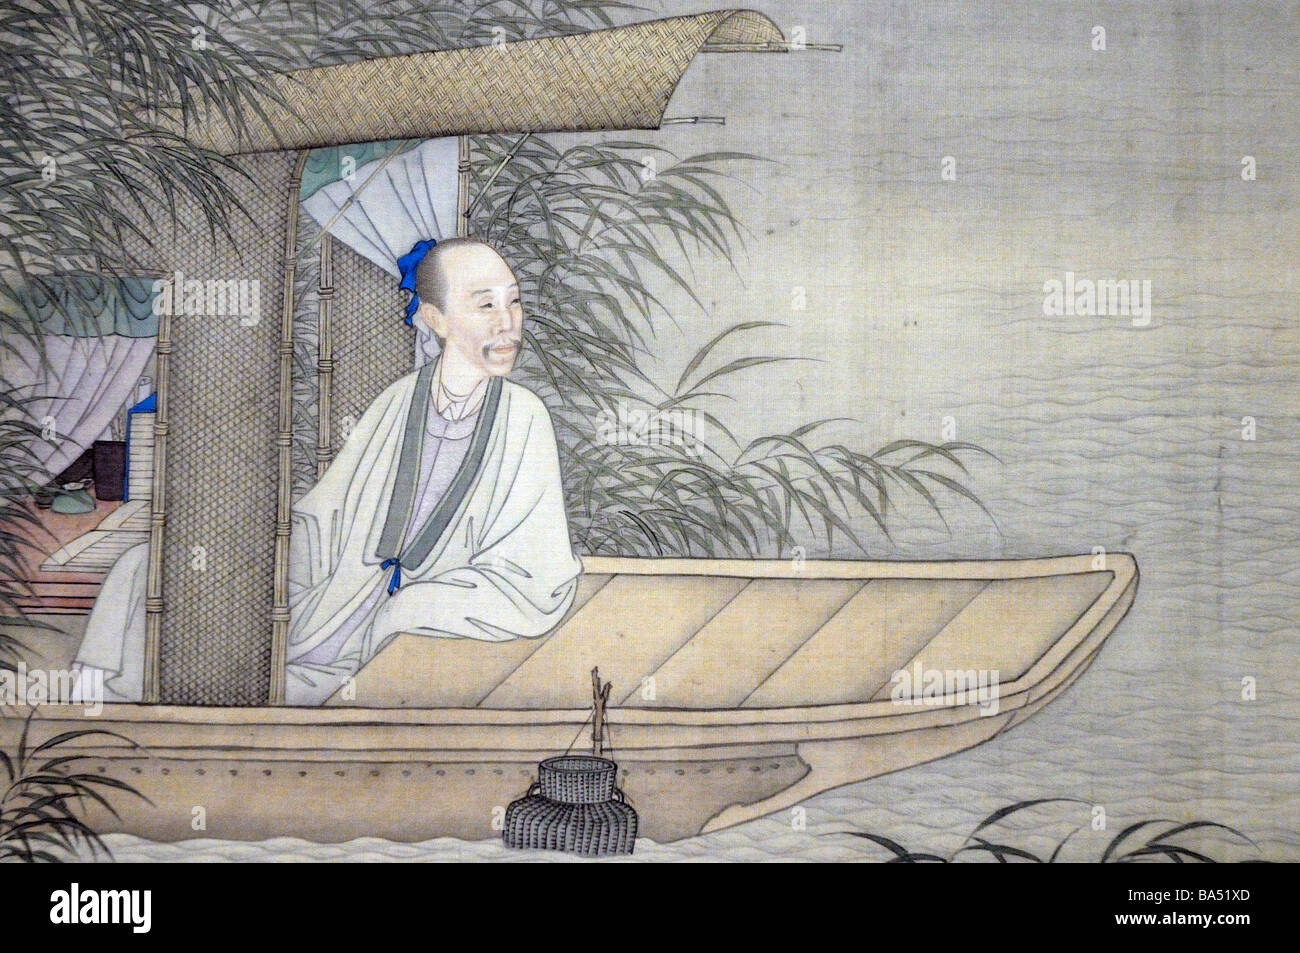 Peinture chinoise ancienne de l'homme sage dans un bateau. Banque D'Images